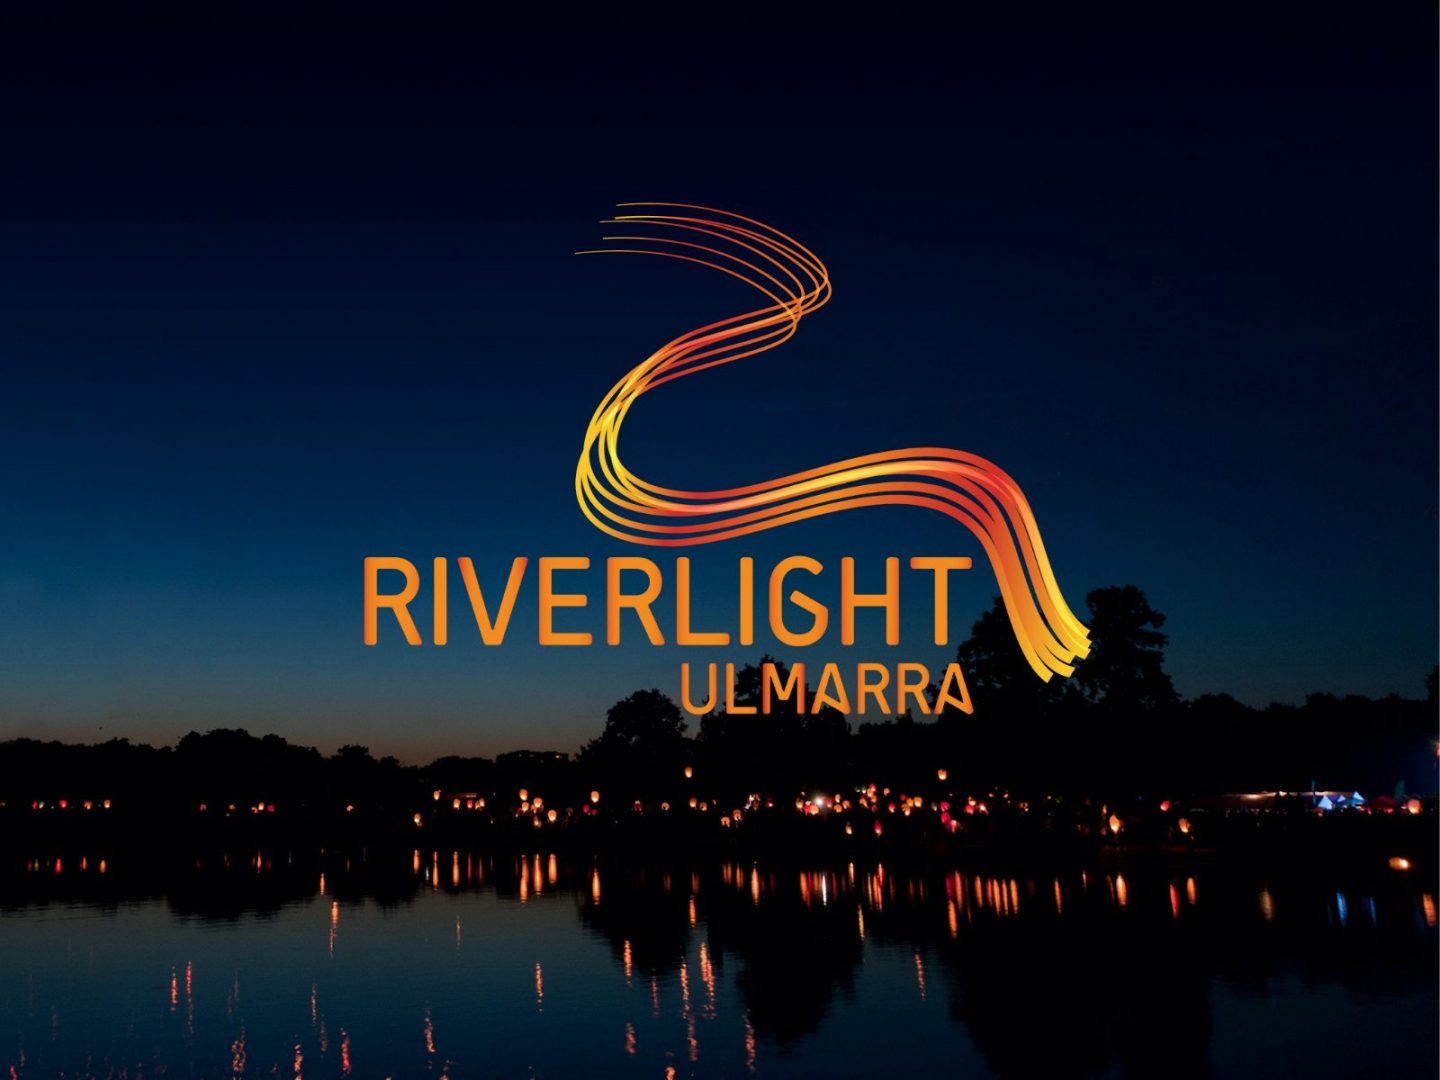 Riverlight Ulmarra